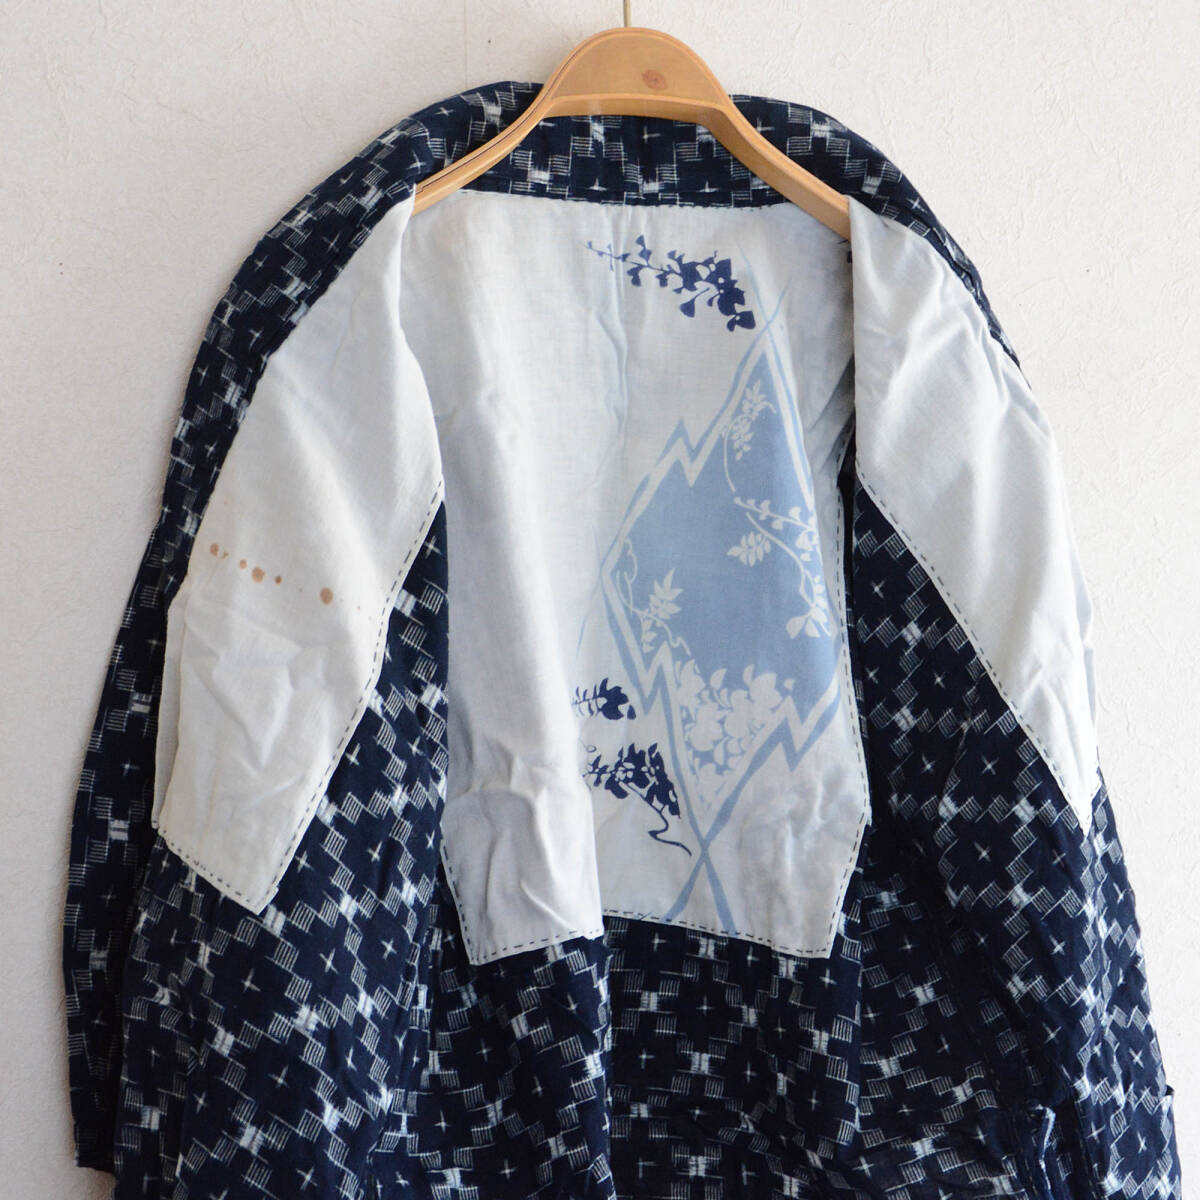 野良着 古布 藍染 絣 木綿 着物 手ぬぐい ジャパンヴィンテージ リメイク素材 昭和 noragi jacket indigo kasuri fabric kimono cottonの画像4